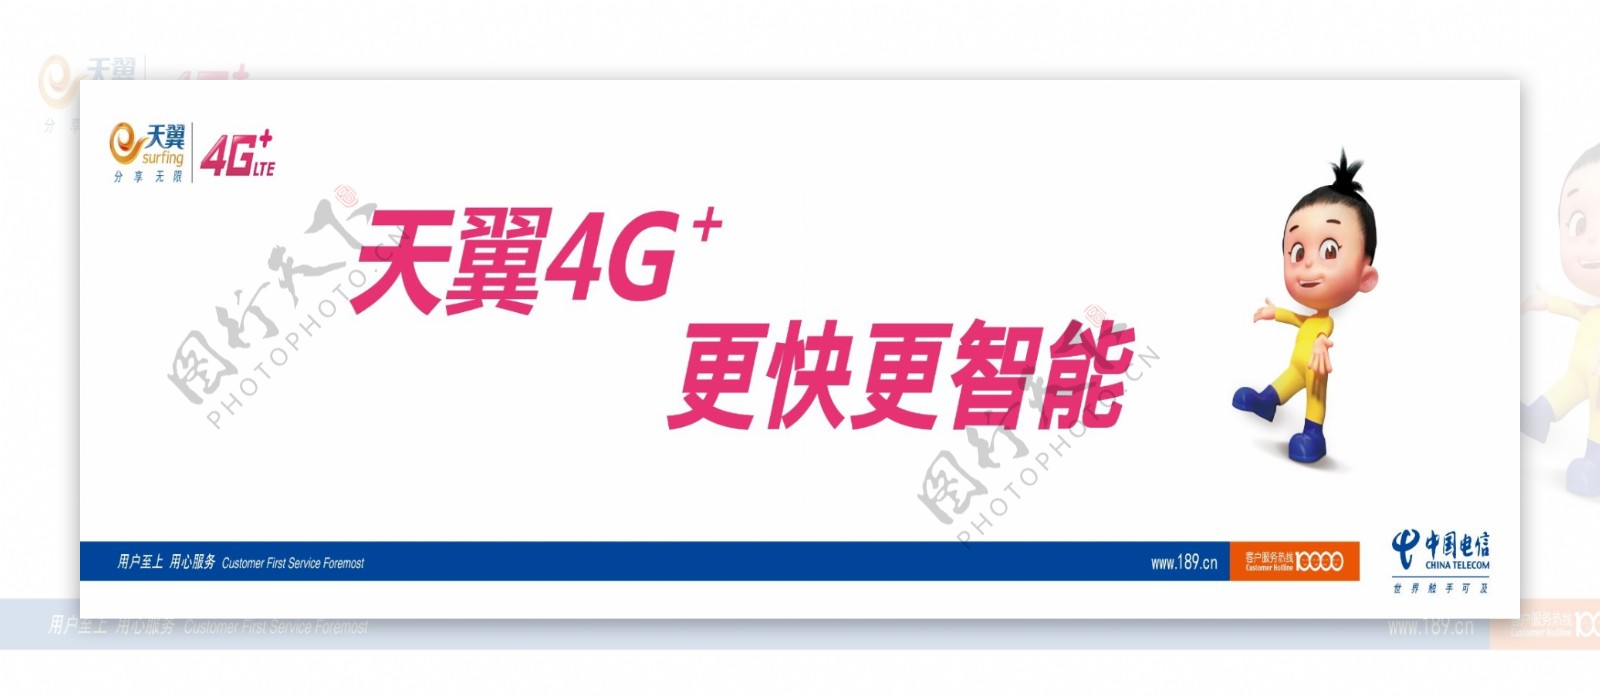 天翼4G广告